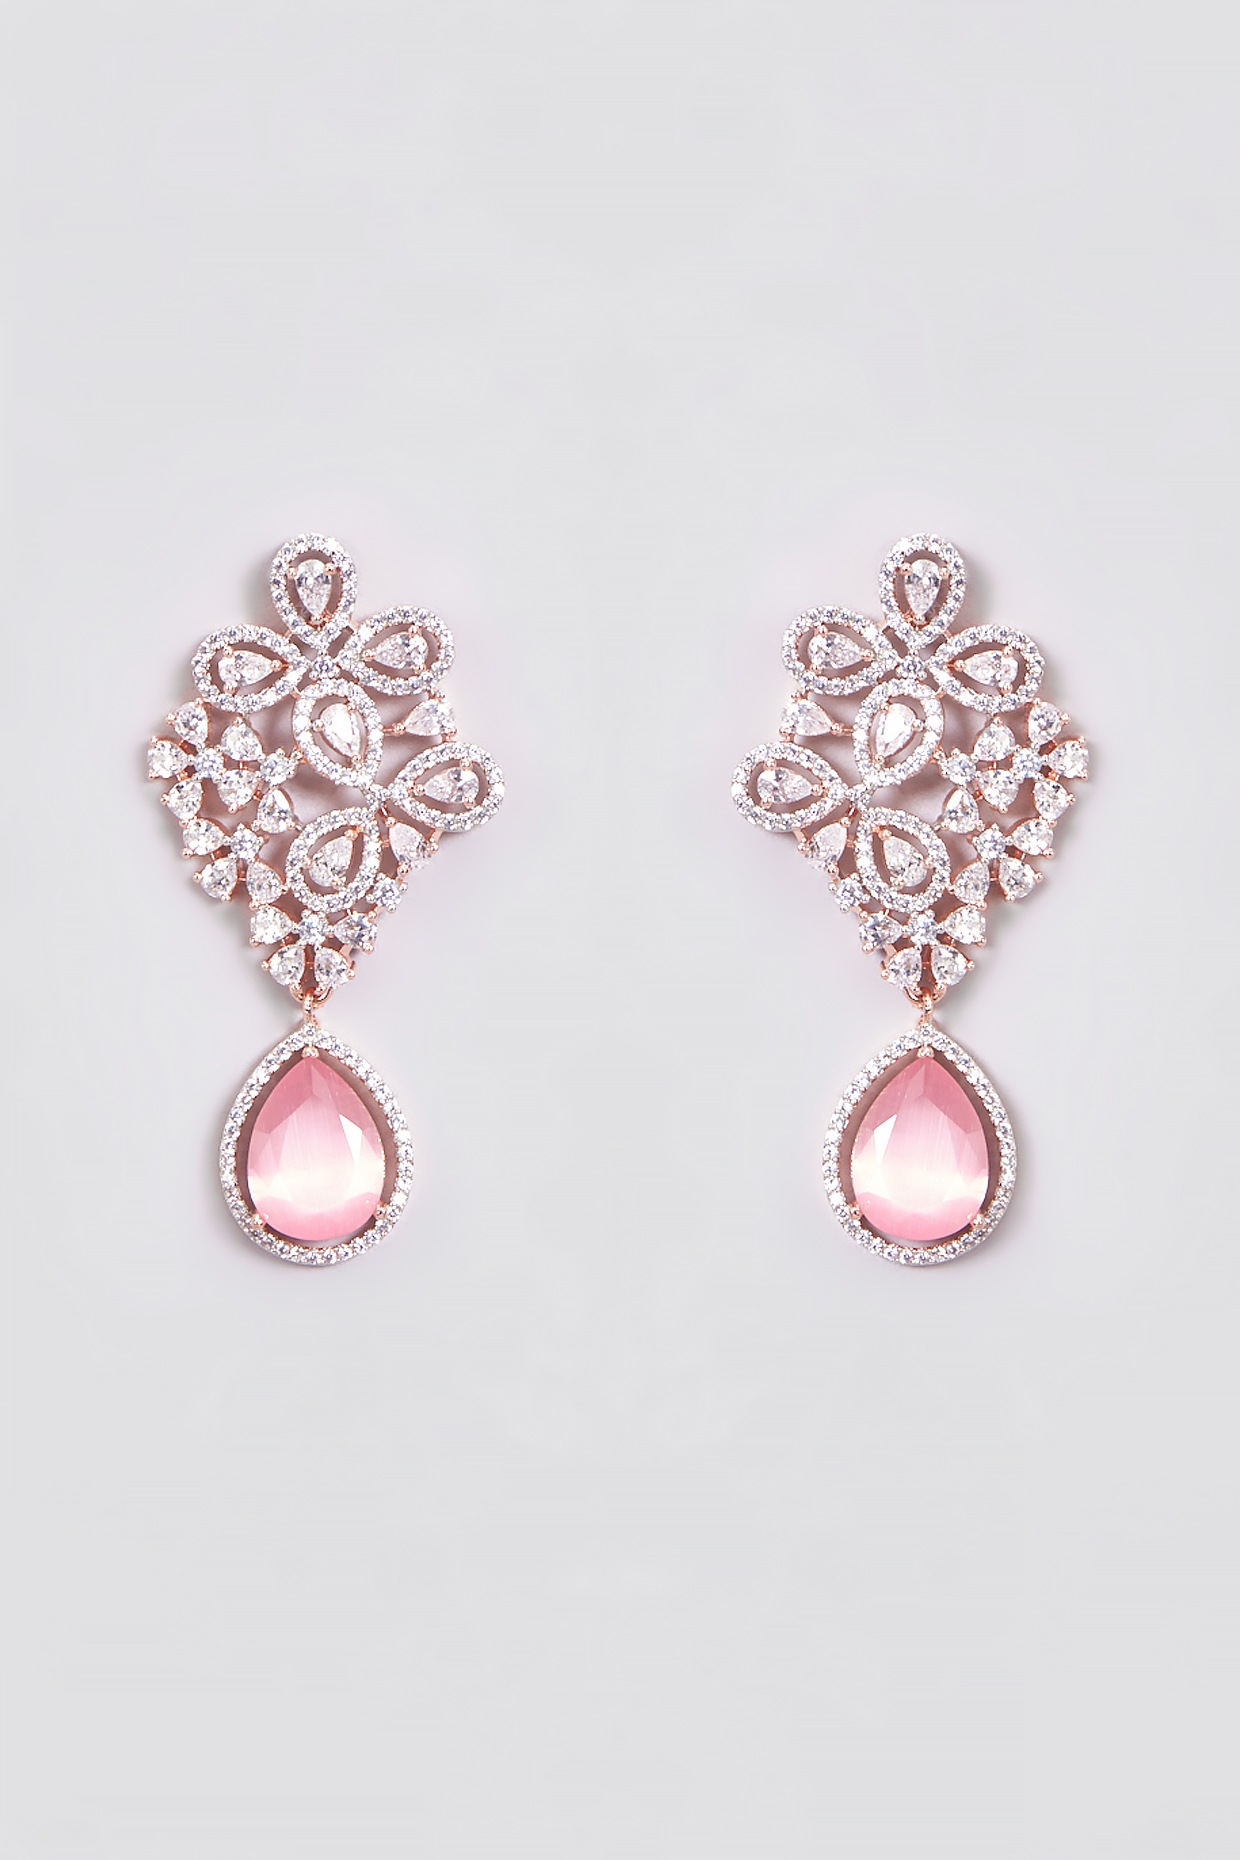 Buy Pink & Golden Hoop Earrings Online - Accessorize India